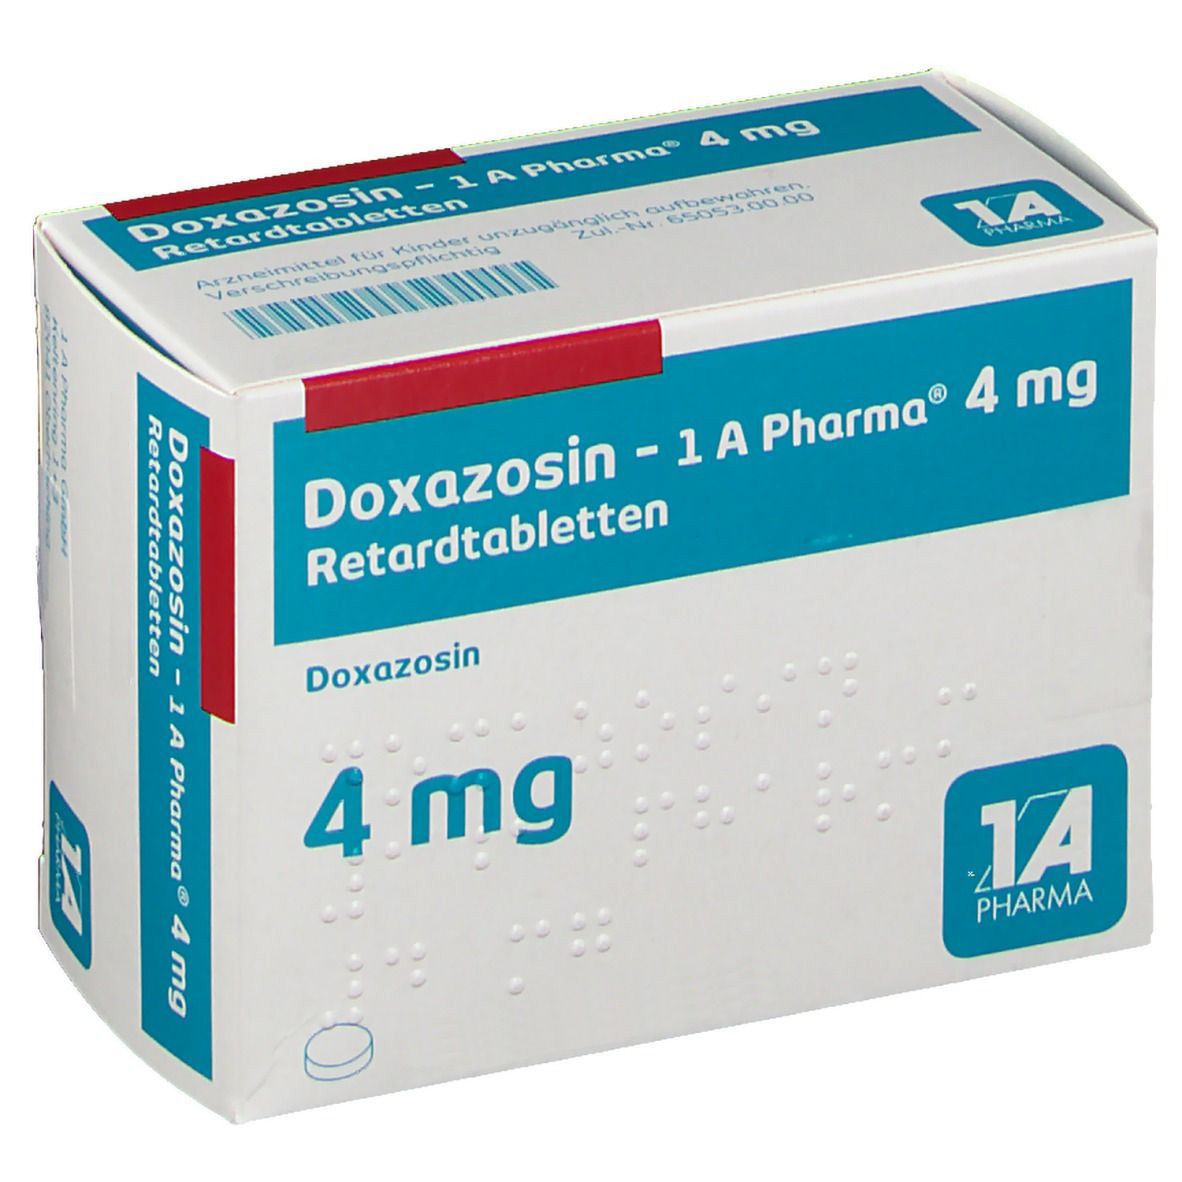 Doxazosin 1A Pharm 4Mg 